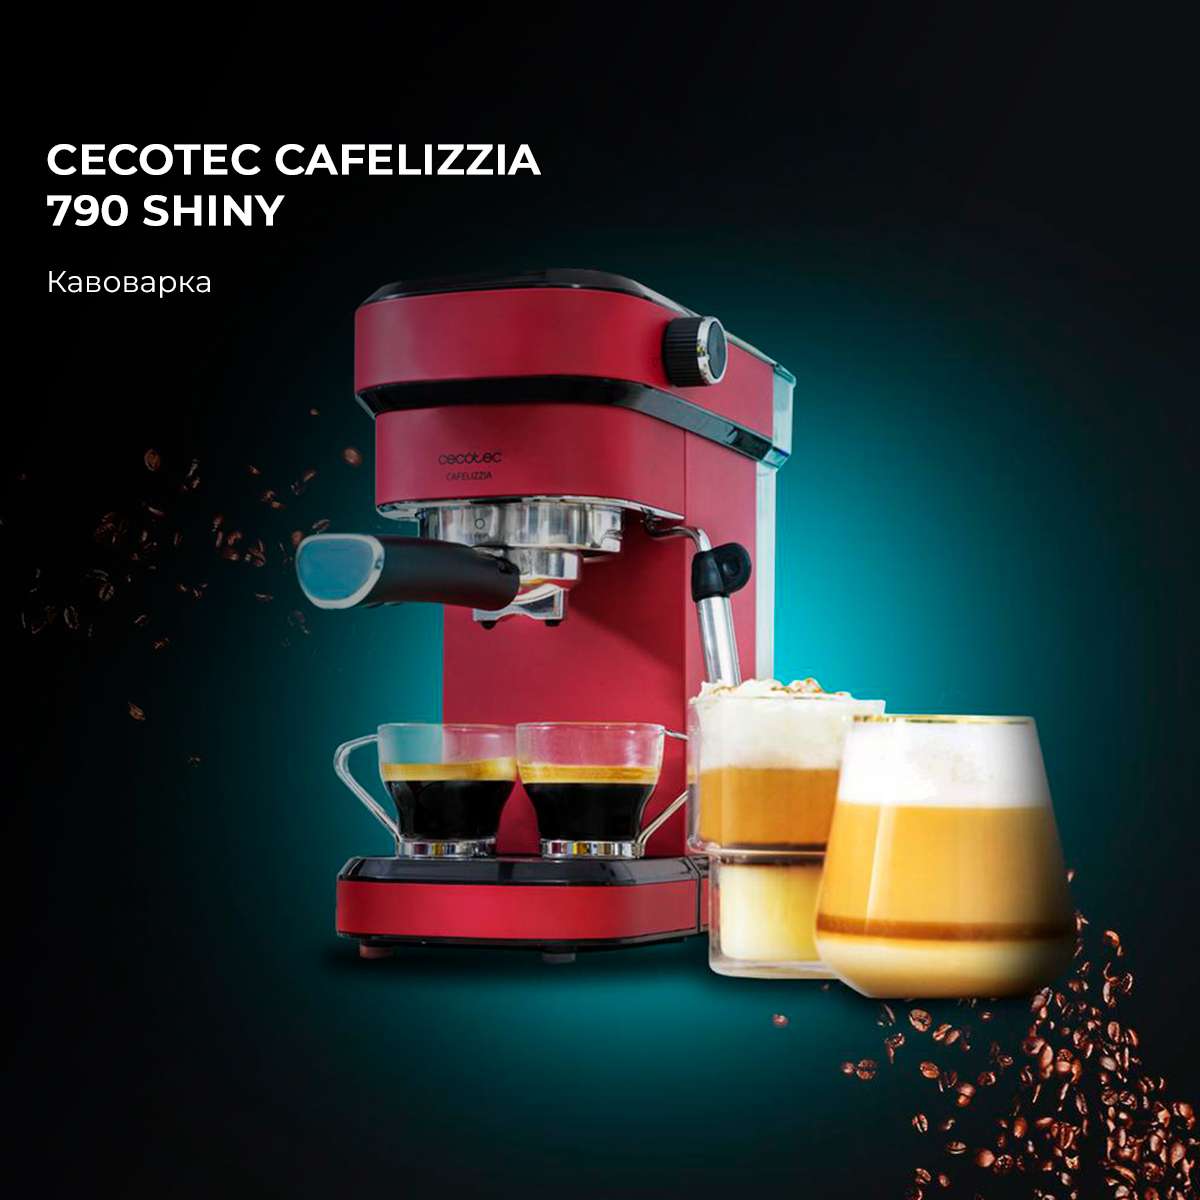 Cafelizzia 790 Shiny Cafetera espresso Cecotec